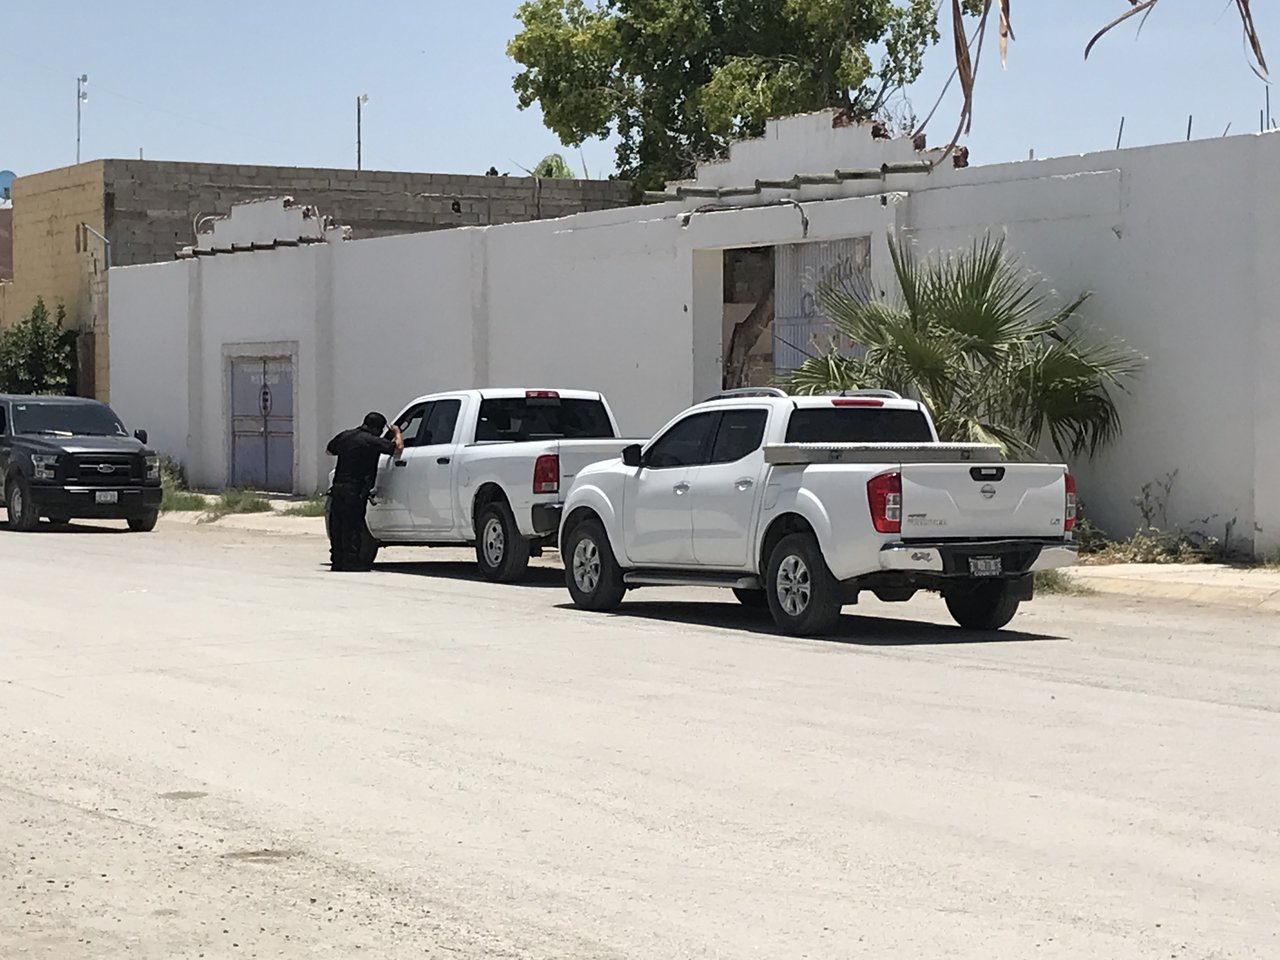 Hombre sin vida es encontrado con huellas de violencia en quinta abandonada de Torreón